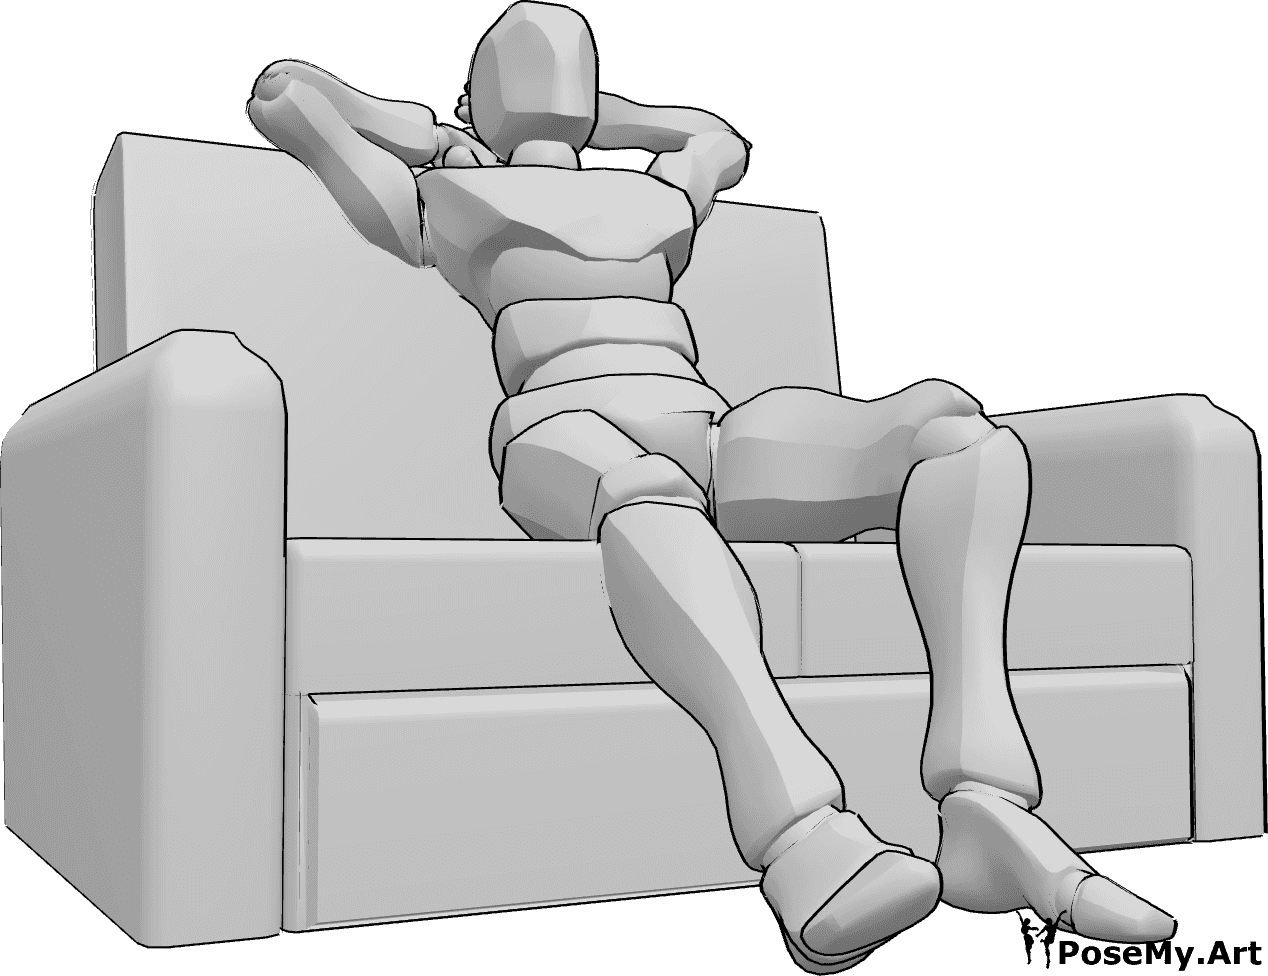 Référence des poses- Pose assise sur le canapé - L'homme est confortablement assis sur le canapé et s'étire les jambes et les bras.